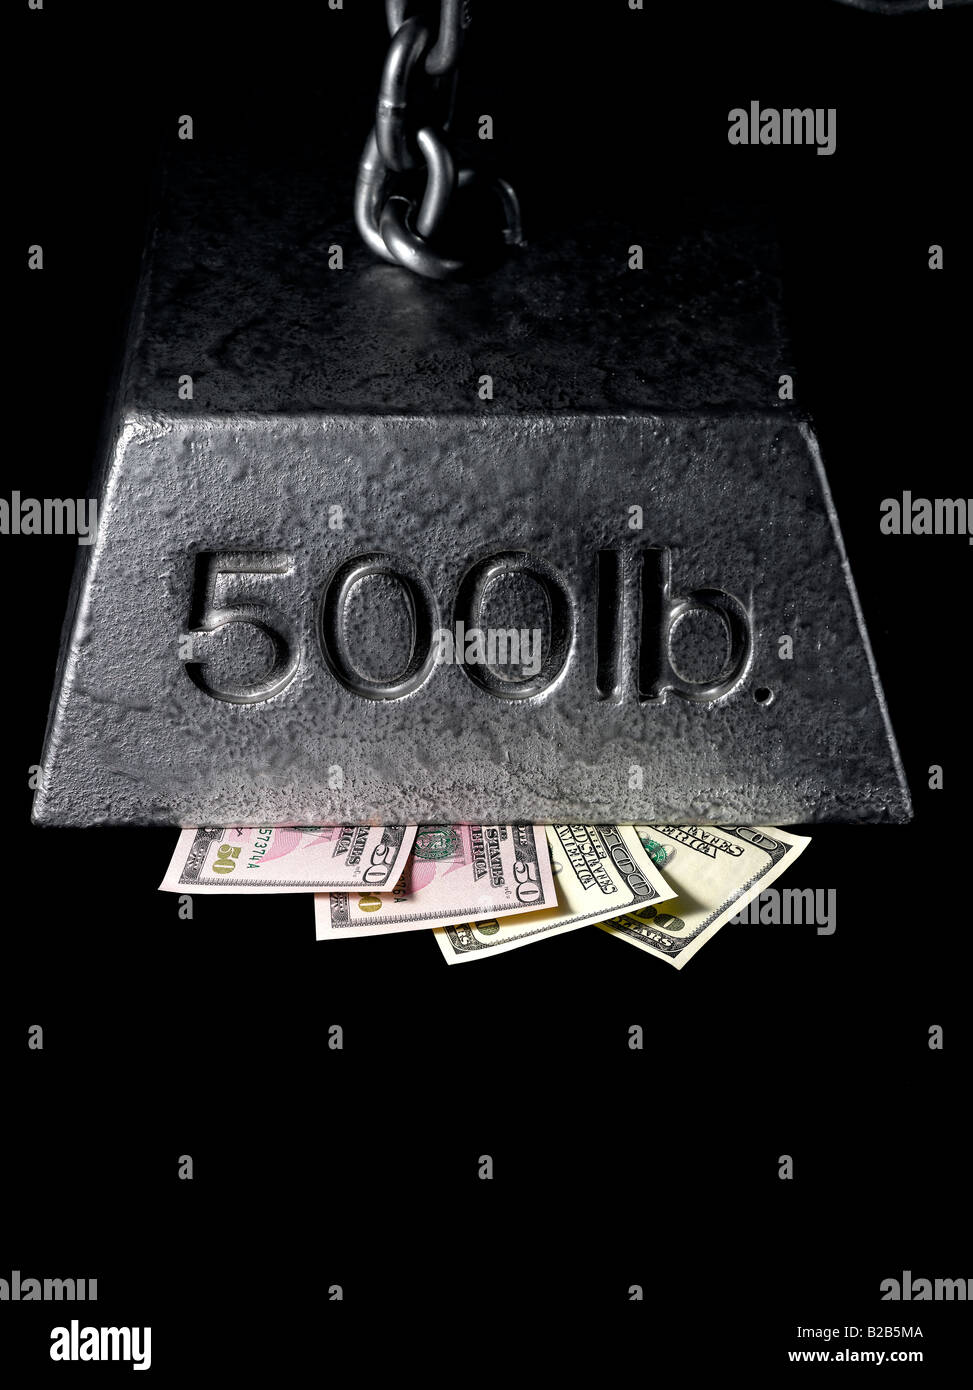 La pression de l'argent et pressé sous le poids financier Photo Stock -  Alamy